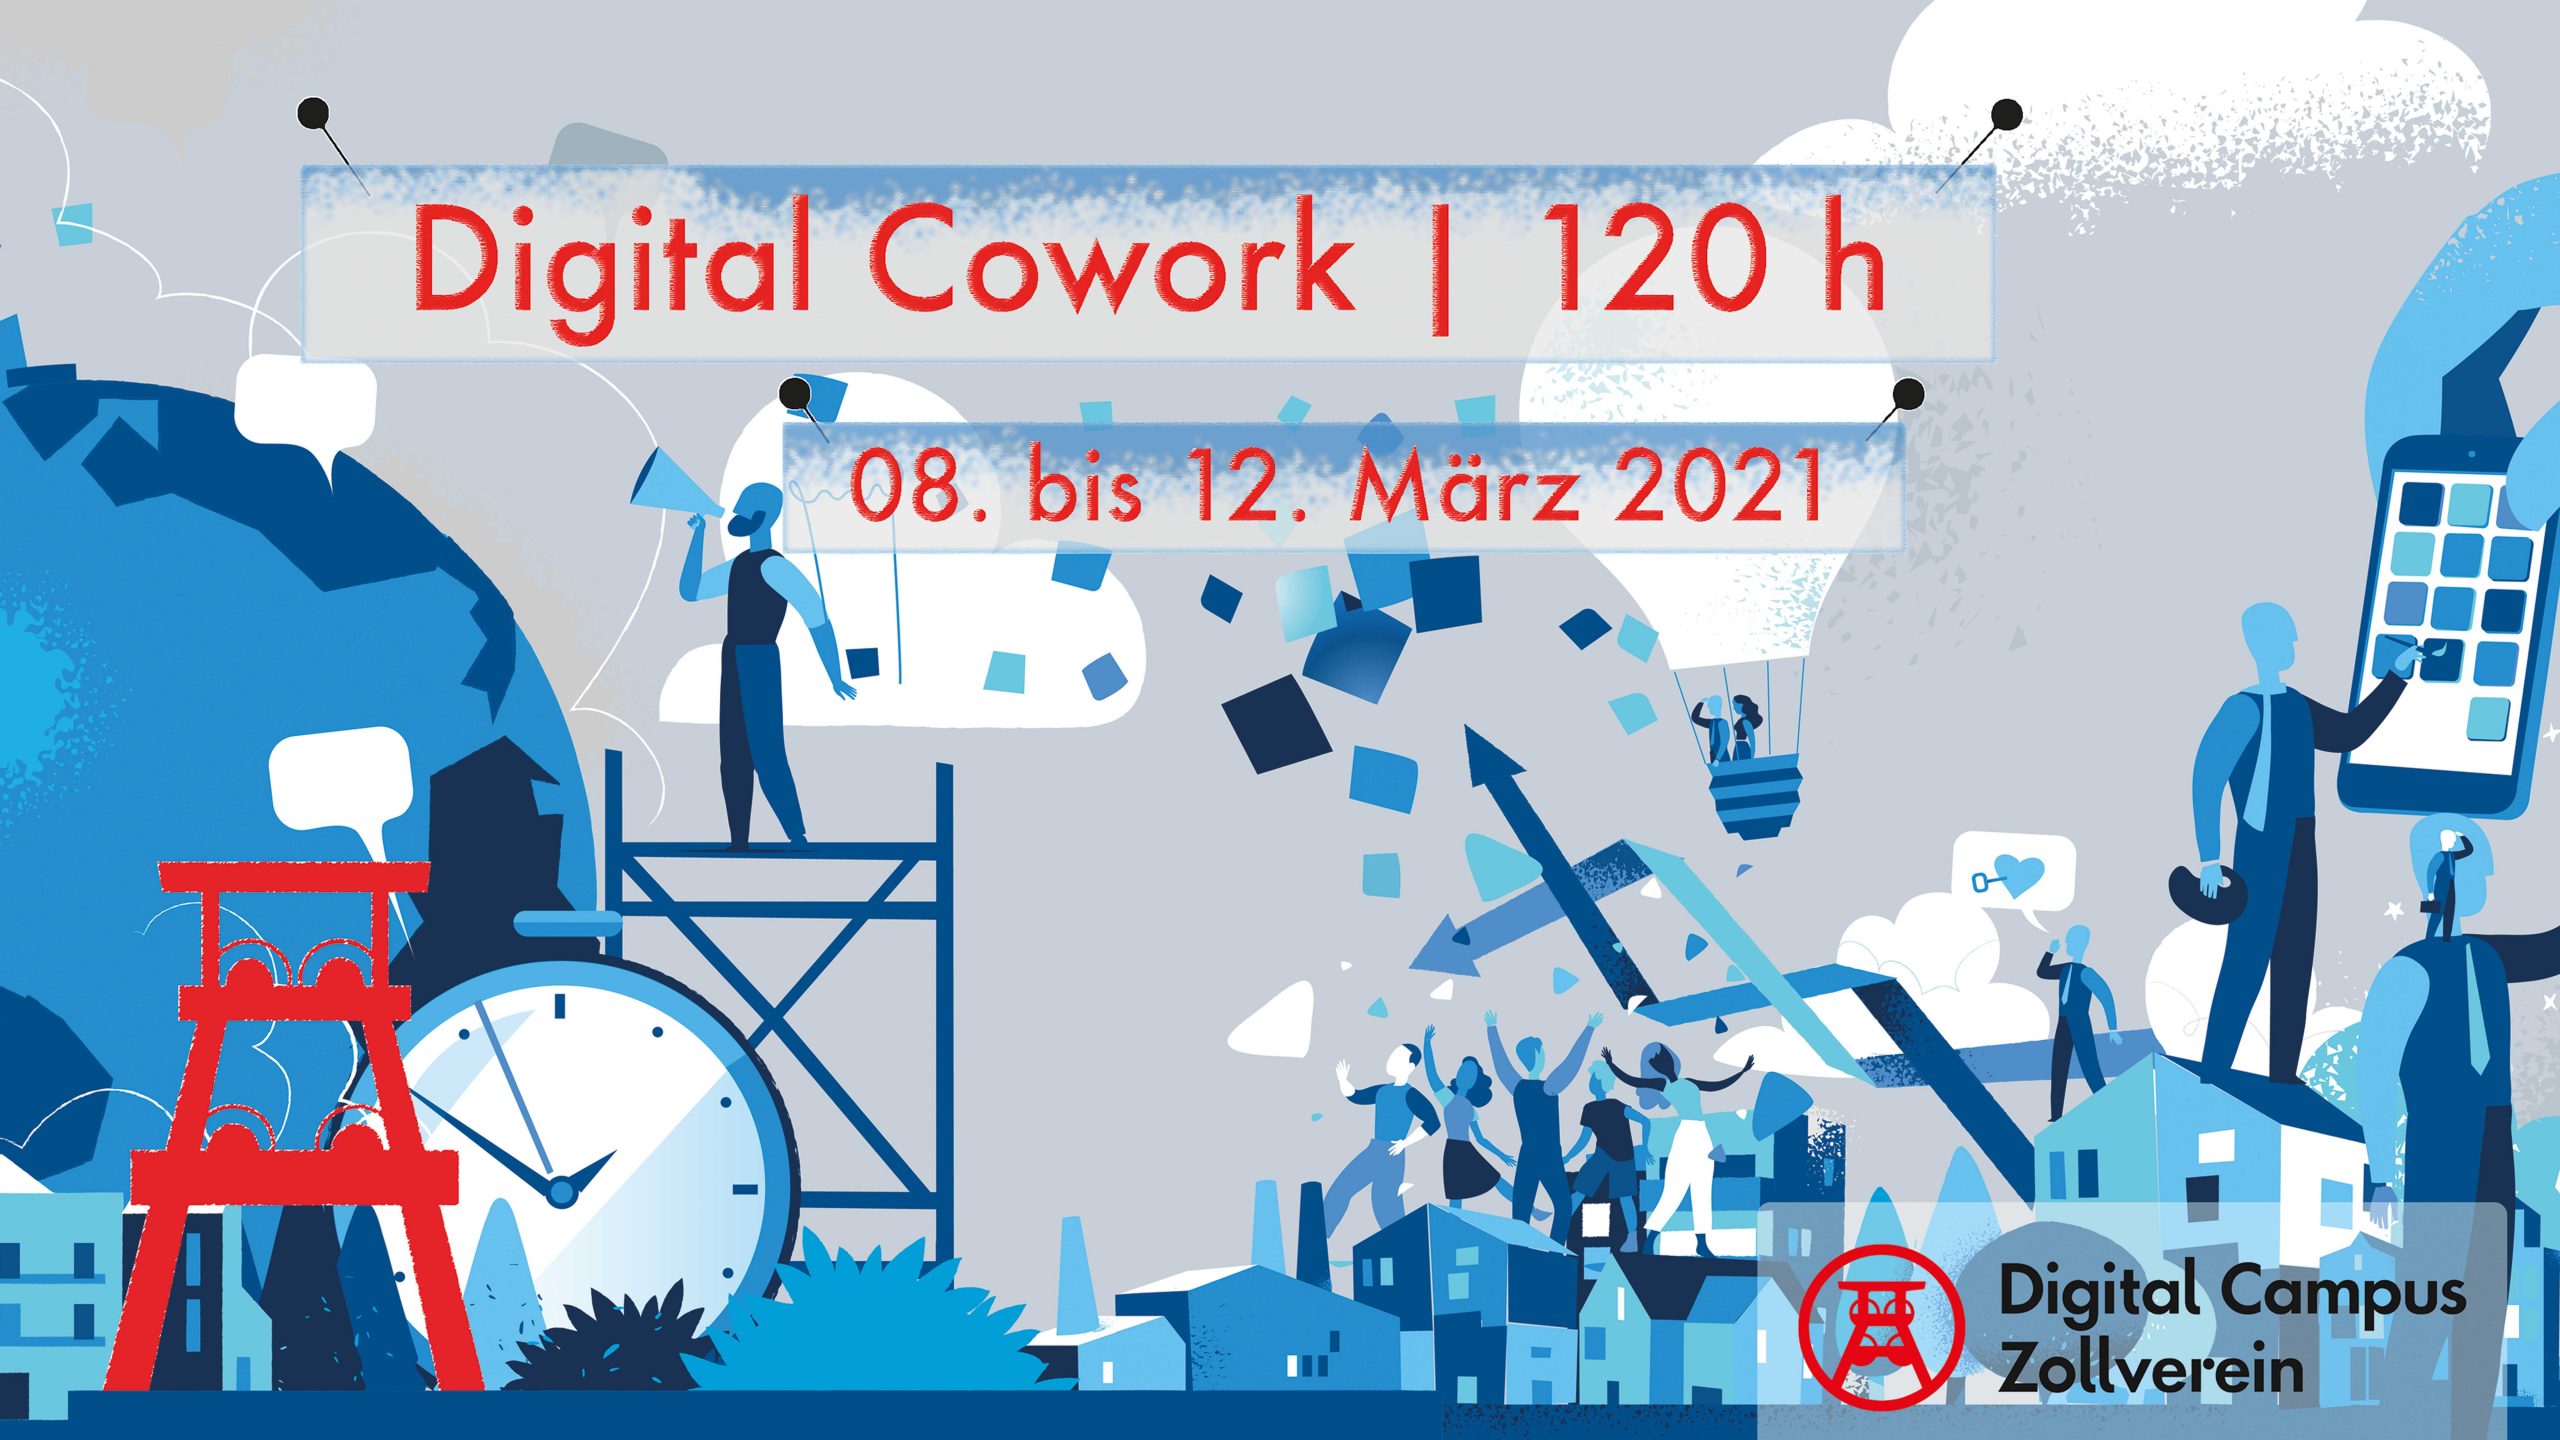 Digital Cowork 120 h